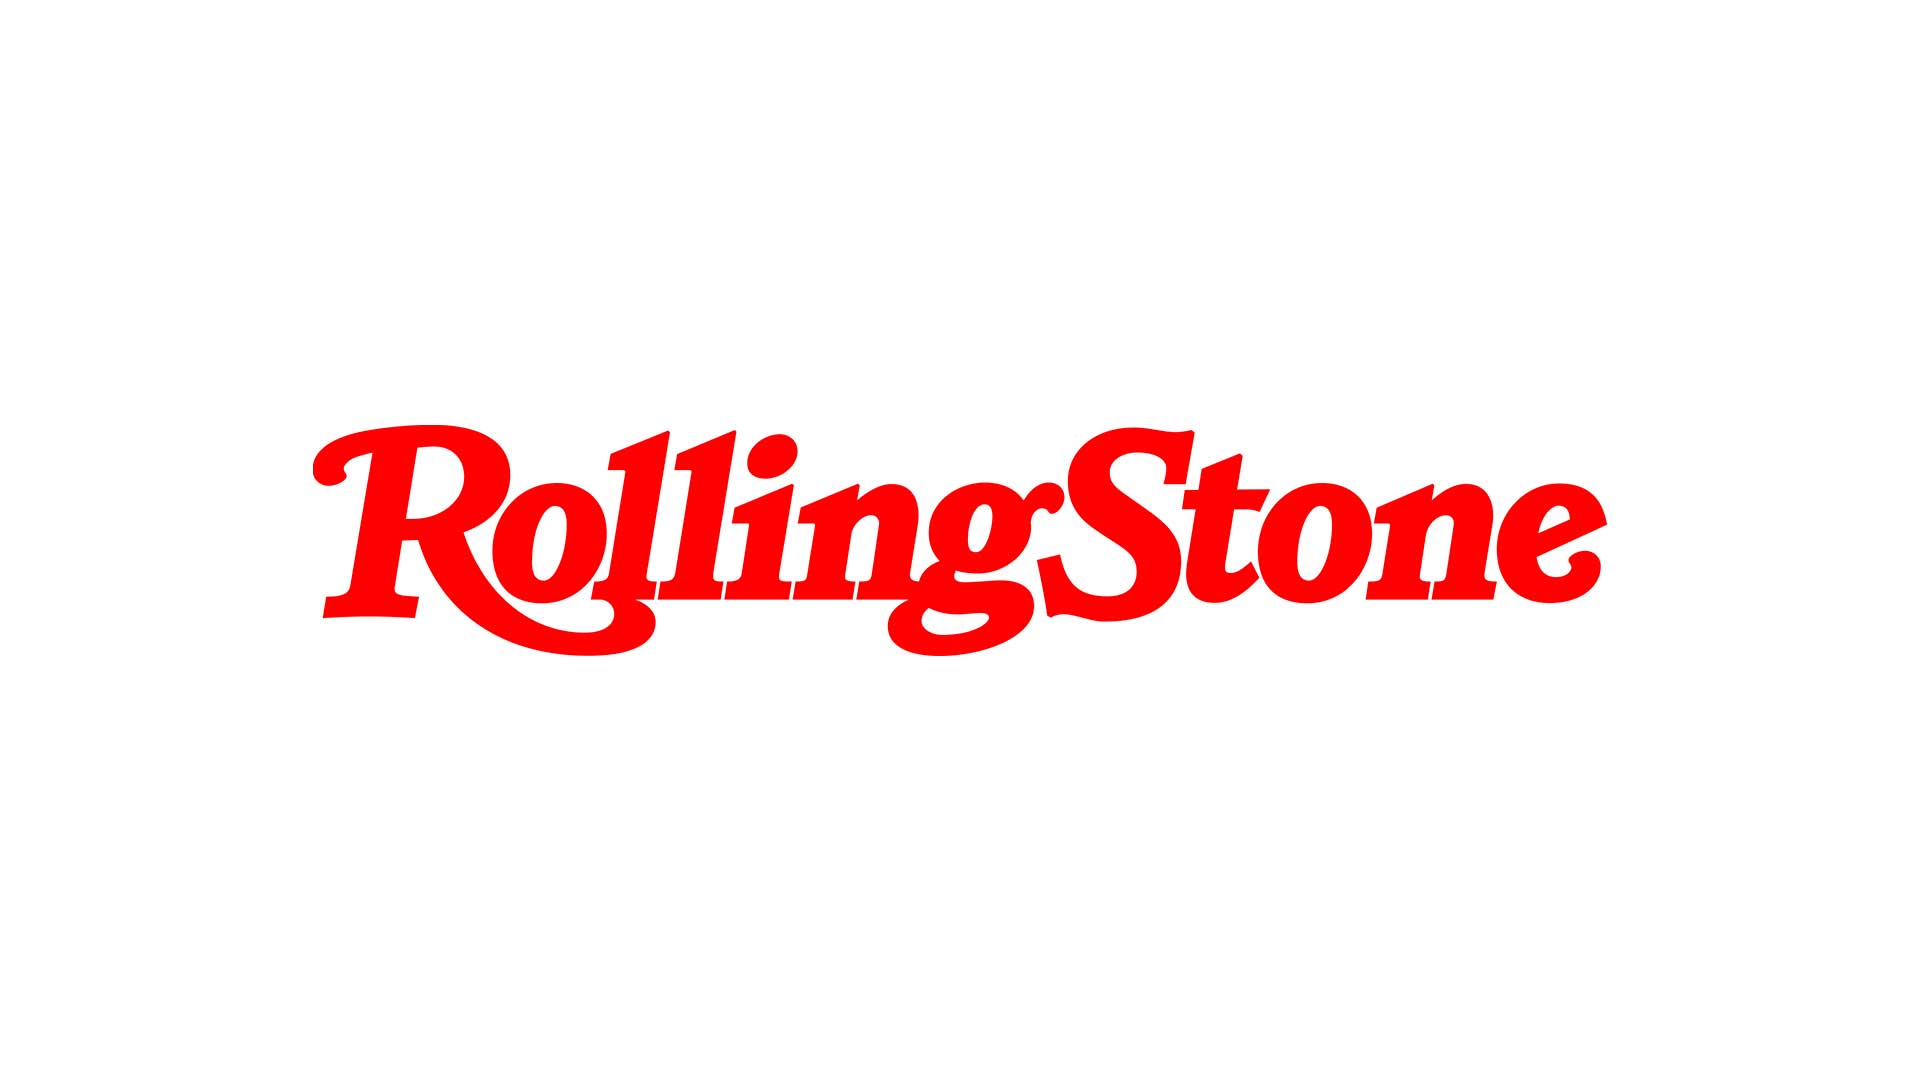 Los 50 mejores álbumes y canciones según Rolling Stone de 2021